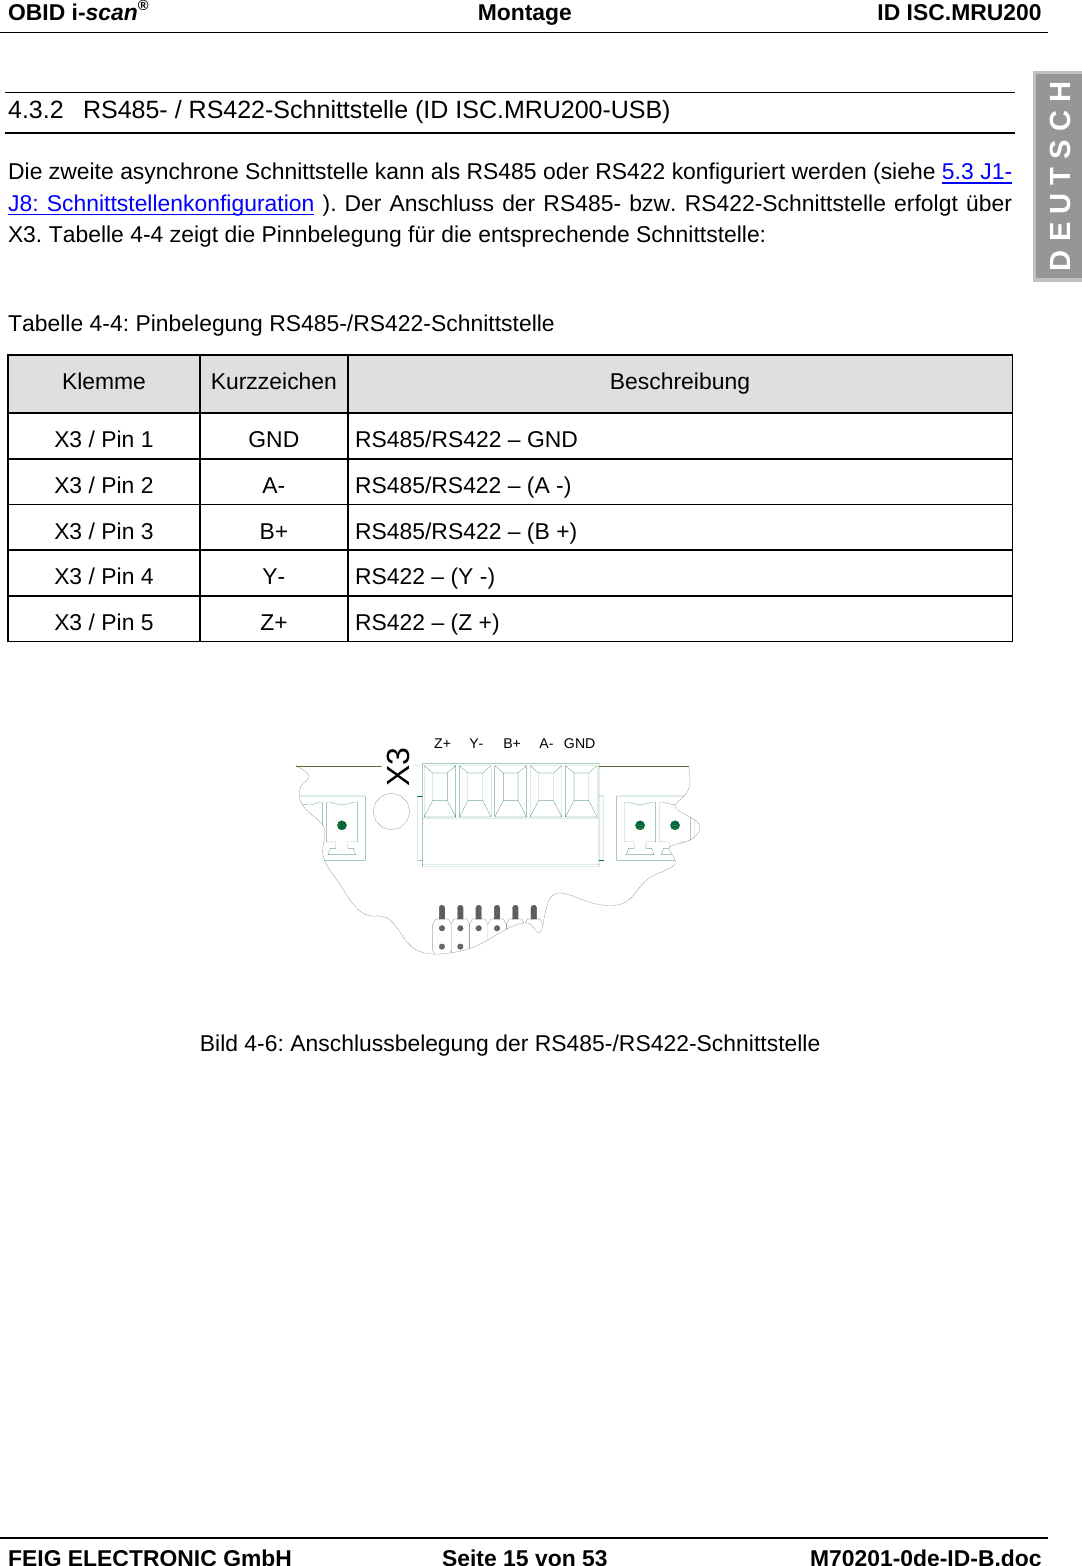 OBID i-scan®Montage ID ISC.MRU200FEIG ELECTRONIC GmbH Seite 15 von 53 M70201-0de-ID-B.docD E U T S C H4.3.2  RS485- / RS422-Schnittstelle (ID ISC.MRU200-USB)Die zweite asynchrone Schnittstelle kann als RS485 oder RS422 konfiguriert werden (siehe 5.3 J1-J8: Schnittstellenkonfiguration ). Der Anschluss der RS485- bzw. RS422-Schnittstelle erfolgt überX3. Tabelle 4-4 zeigt die Pinnbelegung für die entsprechende Schnittstelle:Tabelle 4-4: Pinbelegung RS485-/RS422-SchnittstelleKlemme Kurzzeichen BeschreibungX3 / Pin 1 GND RS485/RS422 – GNDX3 / Pin 2 A- RS485/RS422 – (A -)X3 / Pin 3 B+ RS485/RS422 – (B +)X3 / Pin 4 Y- RS422 – (Y -)X3 / Pin 5 Z+ RS422 – (Z +)Bild 4-6: Anschlussbelegung der RS485-/RS422-SchnittstelleX3Z+ Y- B+ A- GND